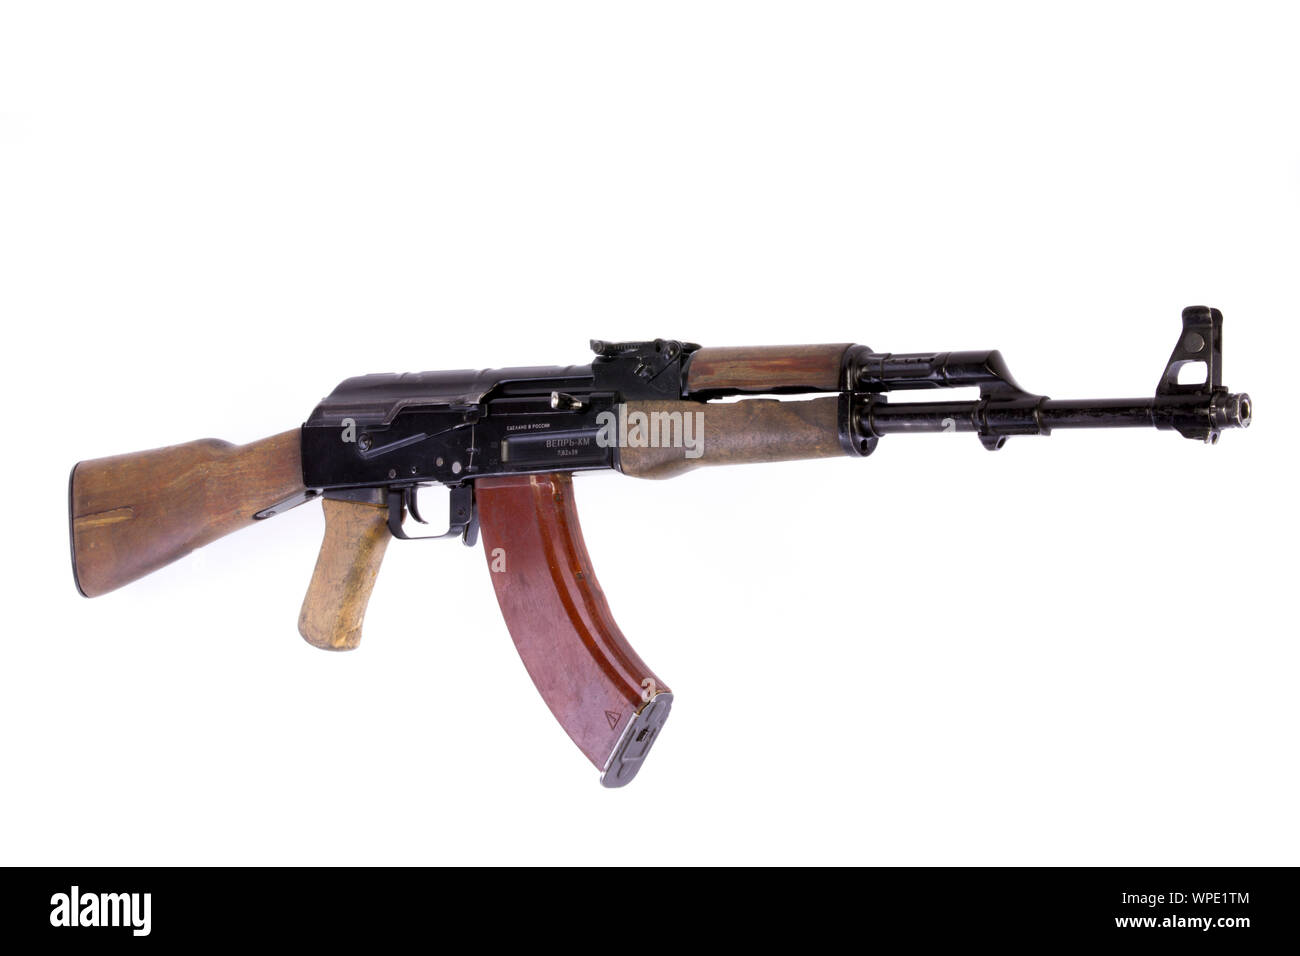 AK-47 Der avtomat Kalashnikova mit Gas betrieben, 7,62 × 39 mm Sturmgewehr Stockfoto